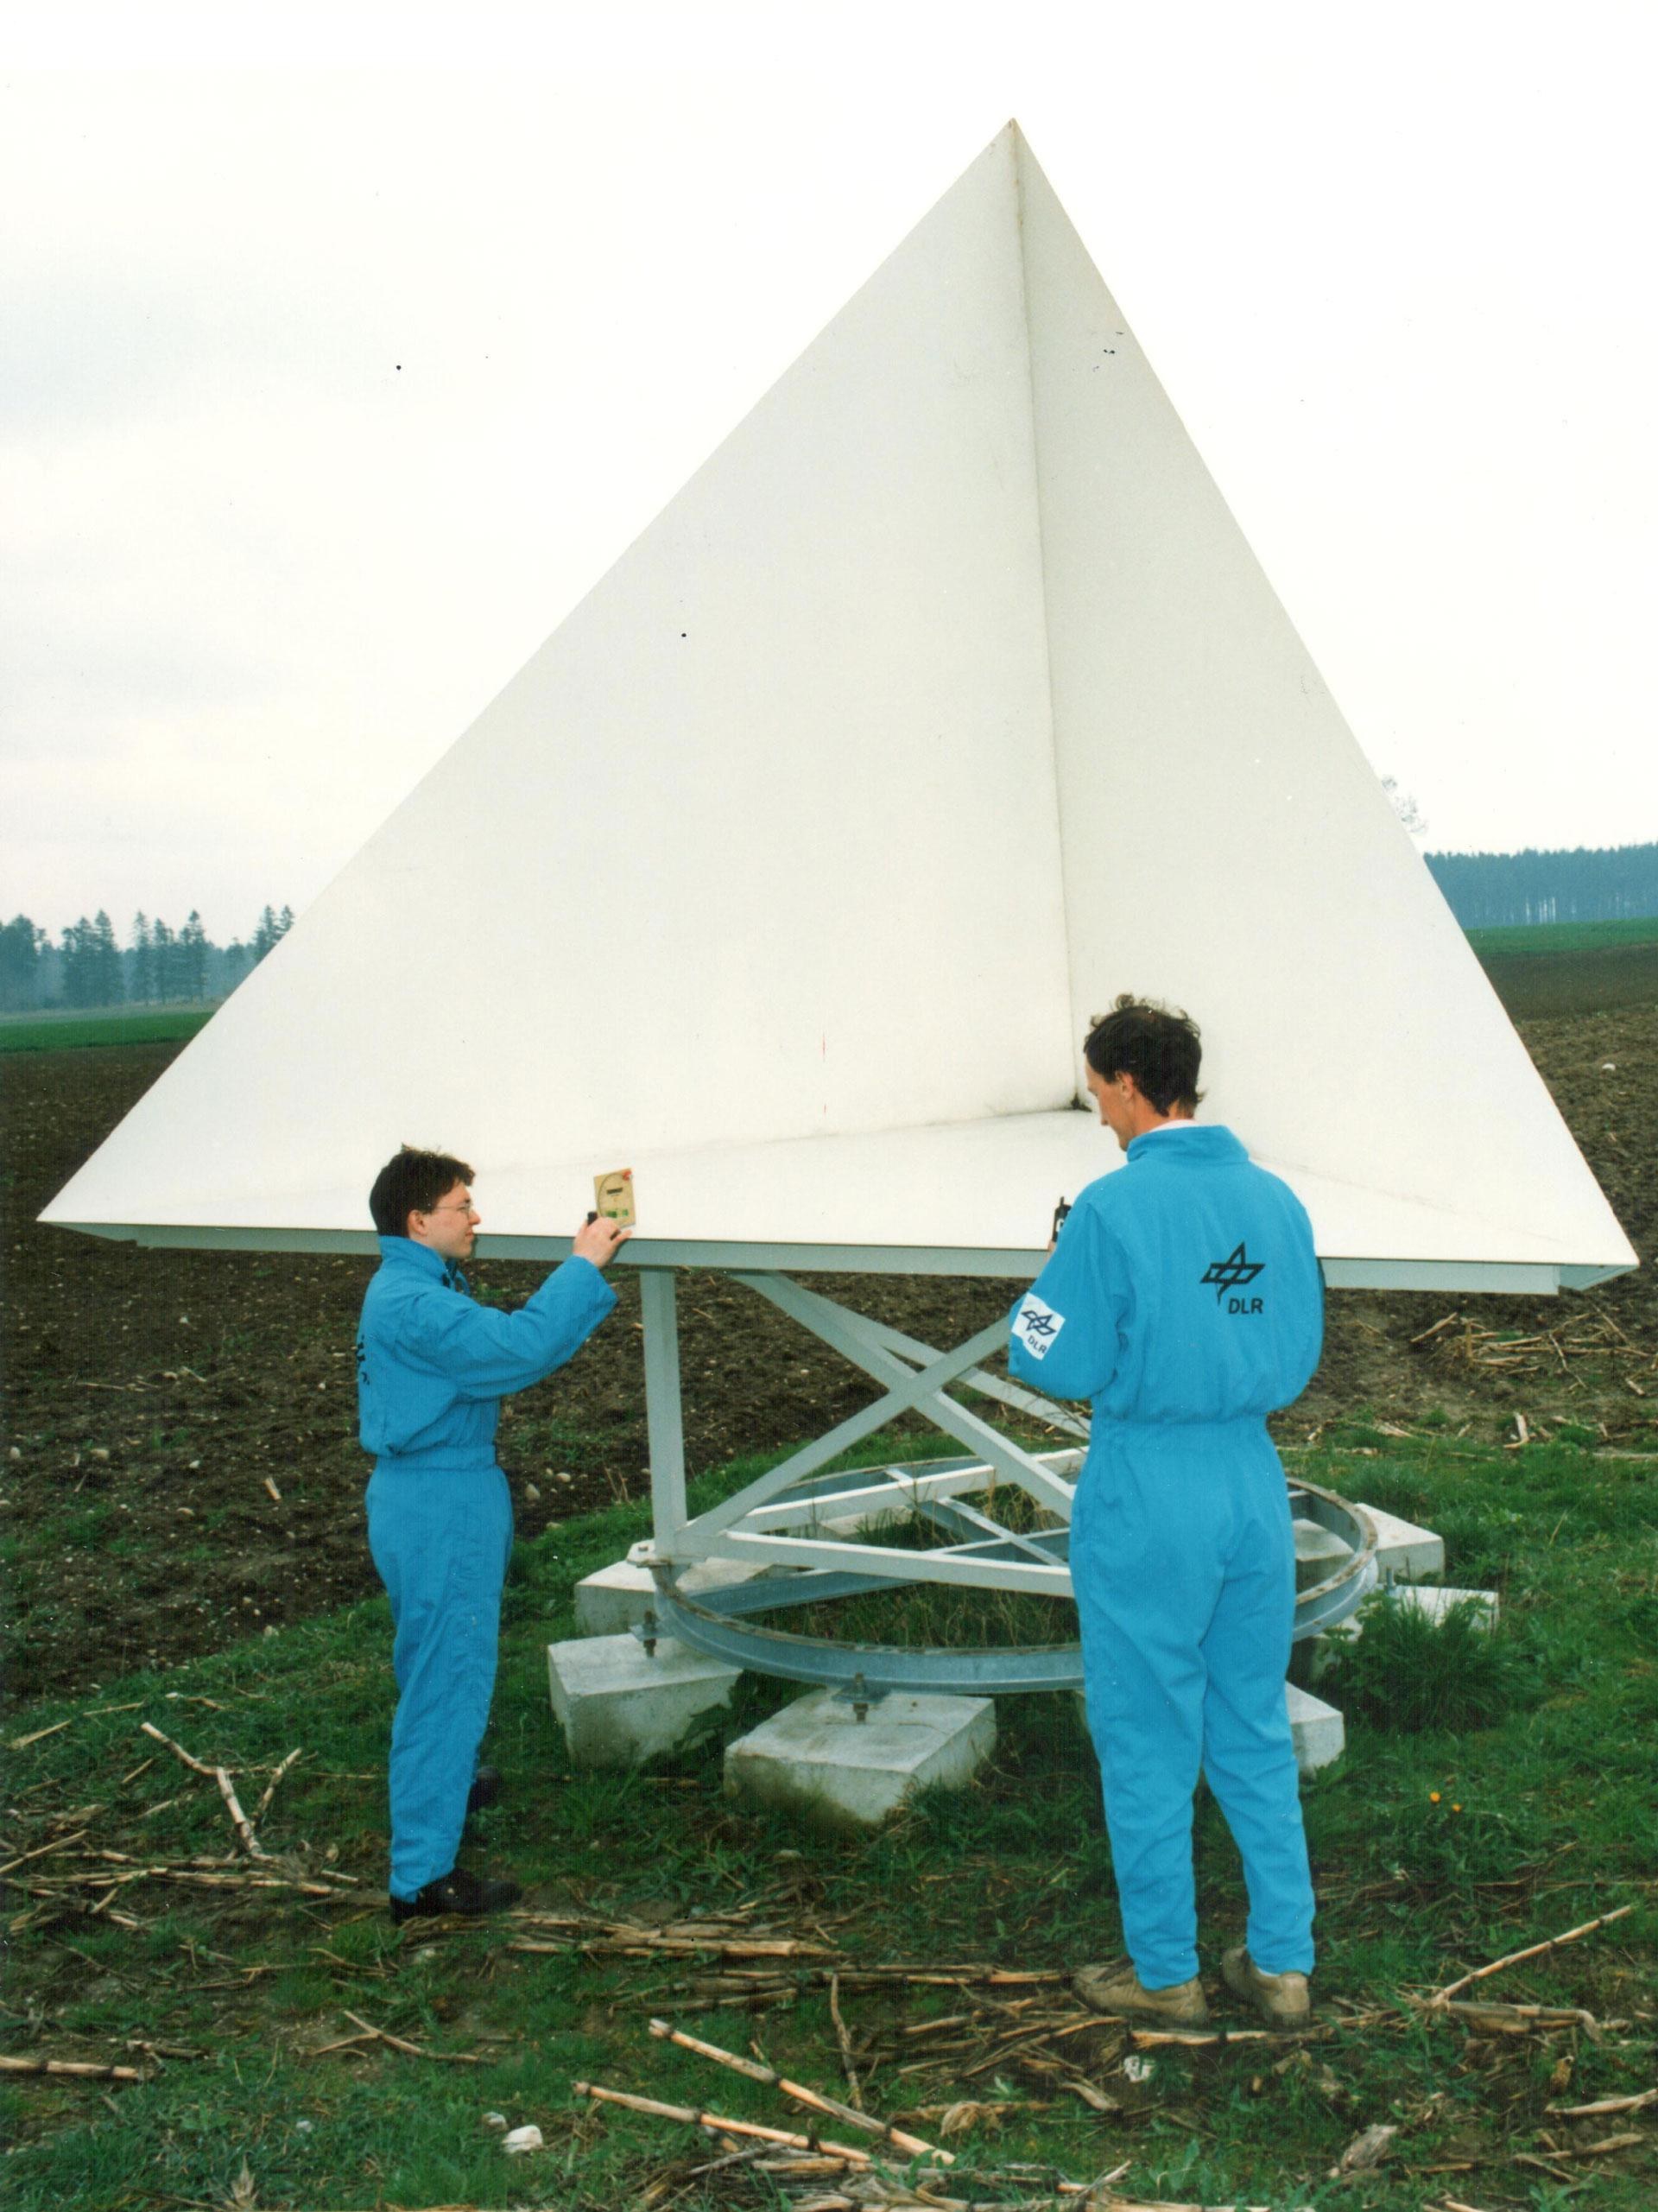 Radarreflektor für die Kalibrierung für die X-SAR-Missionen, aufgestellt vom Institut für Hochfrequenztechnik der Deutschen Forschungsanstalt für Luft- und Raumfahrt (DLR) in einem Testgebiet in Bayern